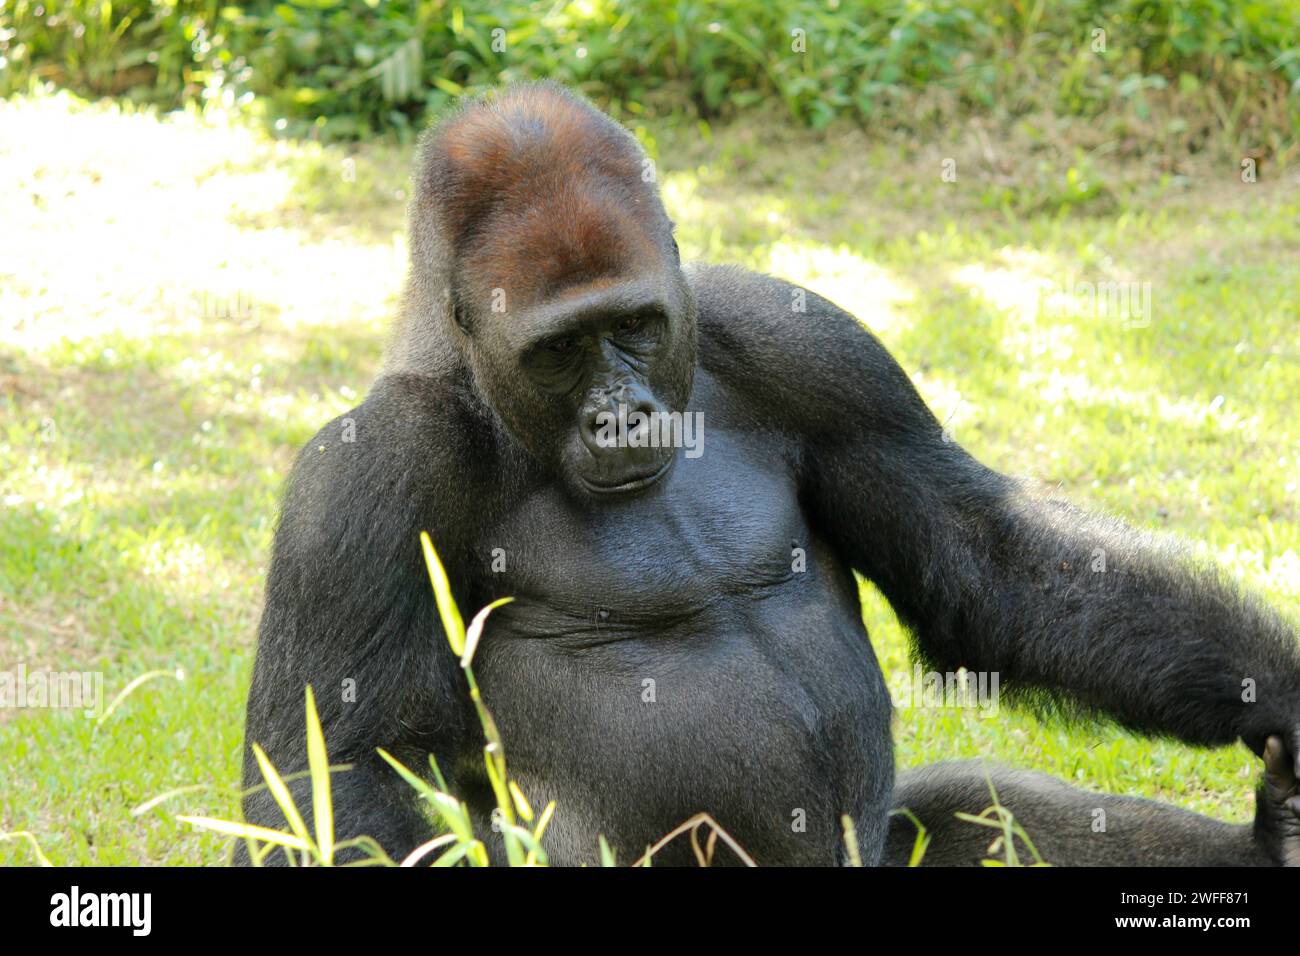 Gorille (Troglodytes gorilla), les singes herbivores qui habitent les forêts du centre de l'Afrique subsaharienne, assis sur terre dans un zoo Banque D'Images